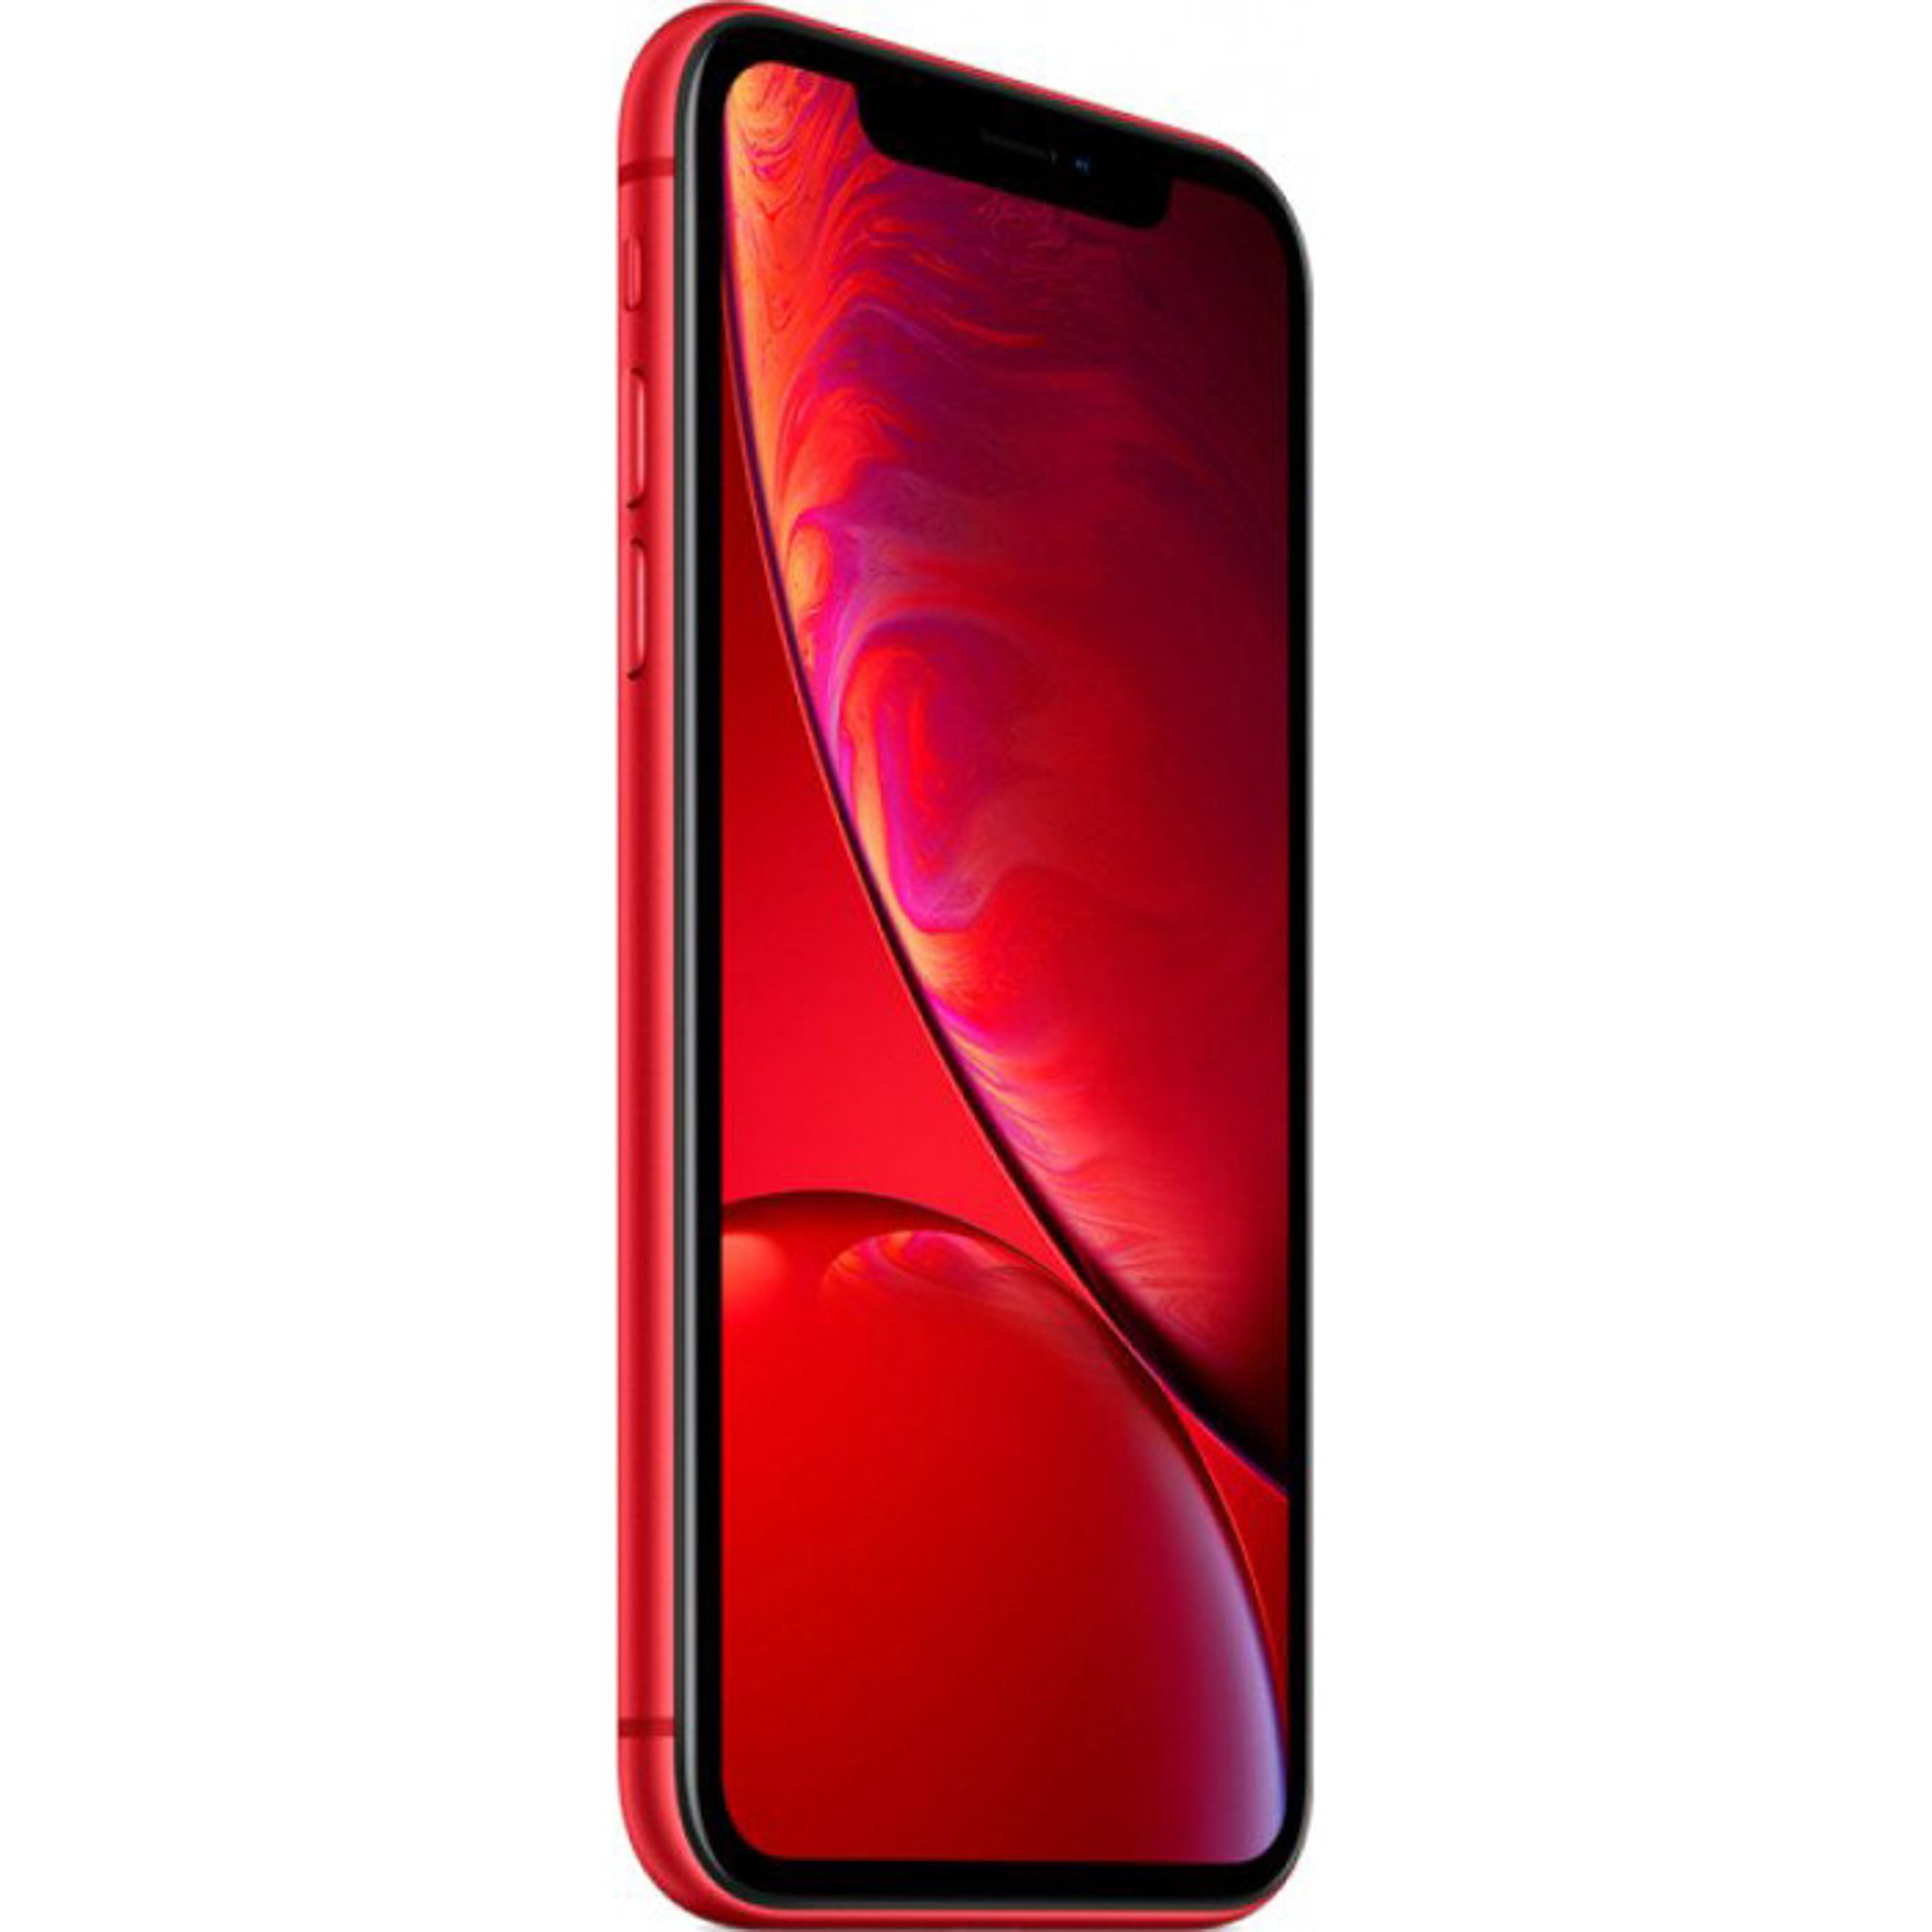 Смартфон Apple iPhone XR 64Gb Red, цвет красный MRY62RU/A A12 Bionic - фото 3